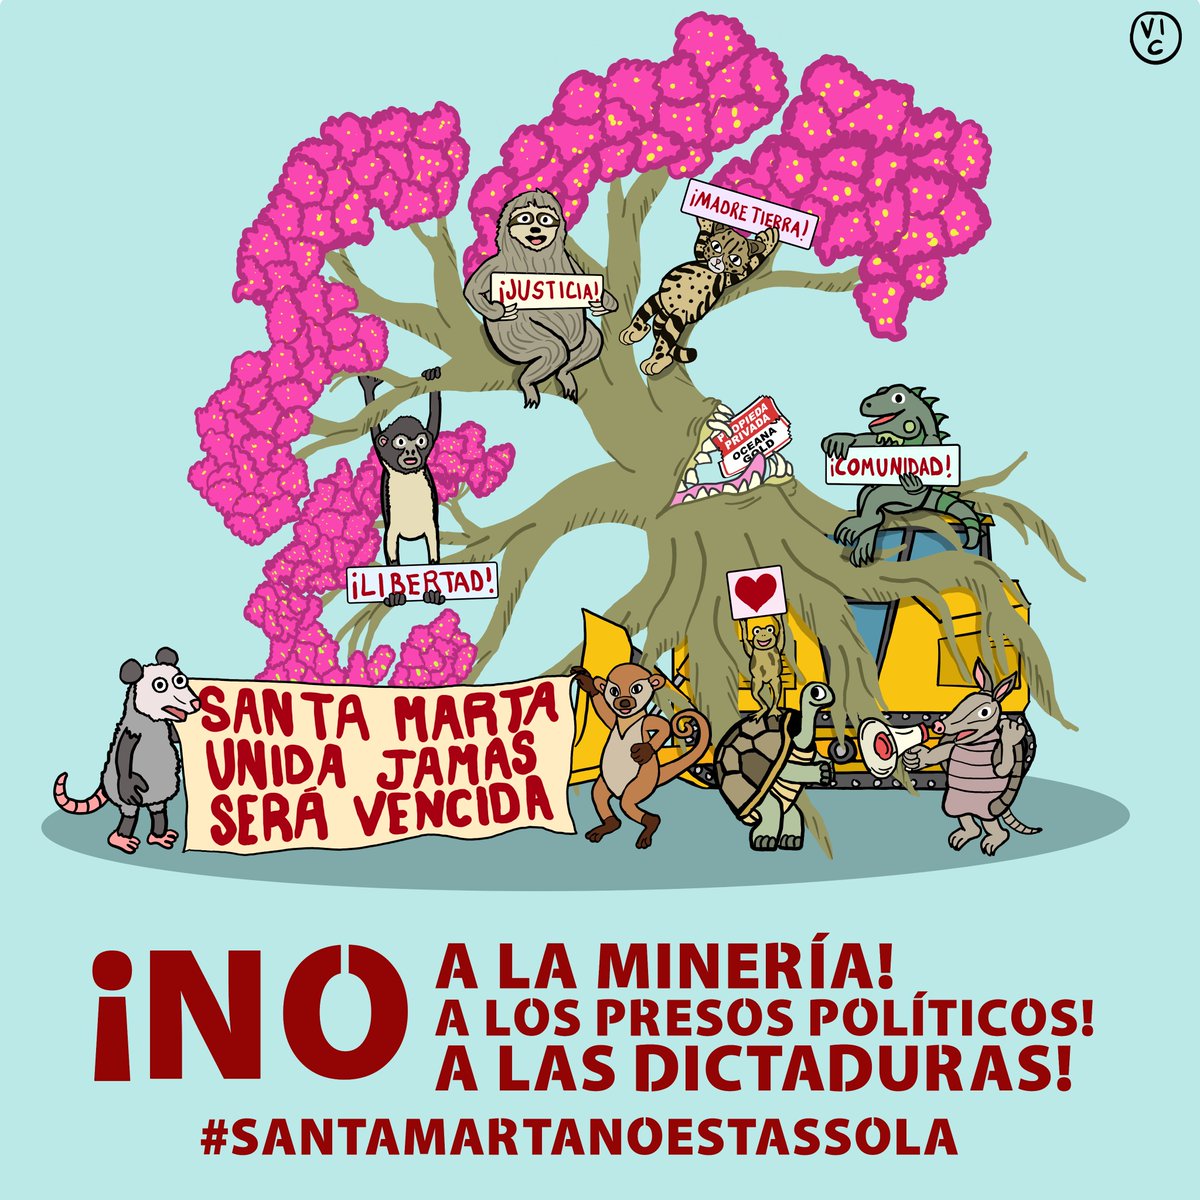 ¡No a la minería! ¡Libertad para los presos políticos! ¡No más dictaduras! #SantaMarta #SantaMartaNoEstasSola